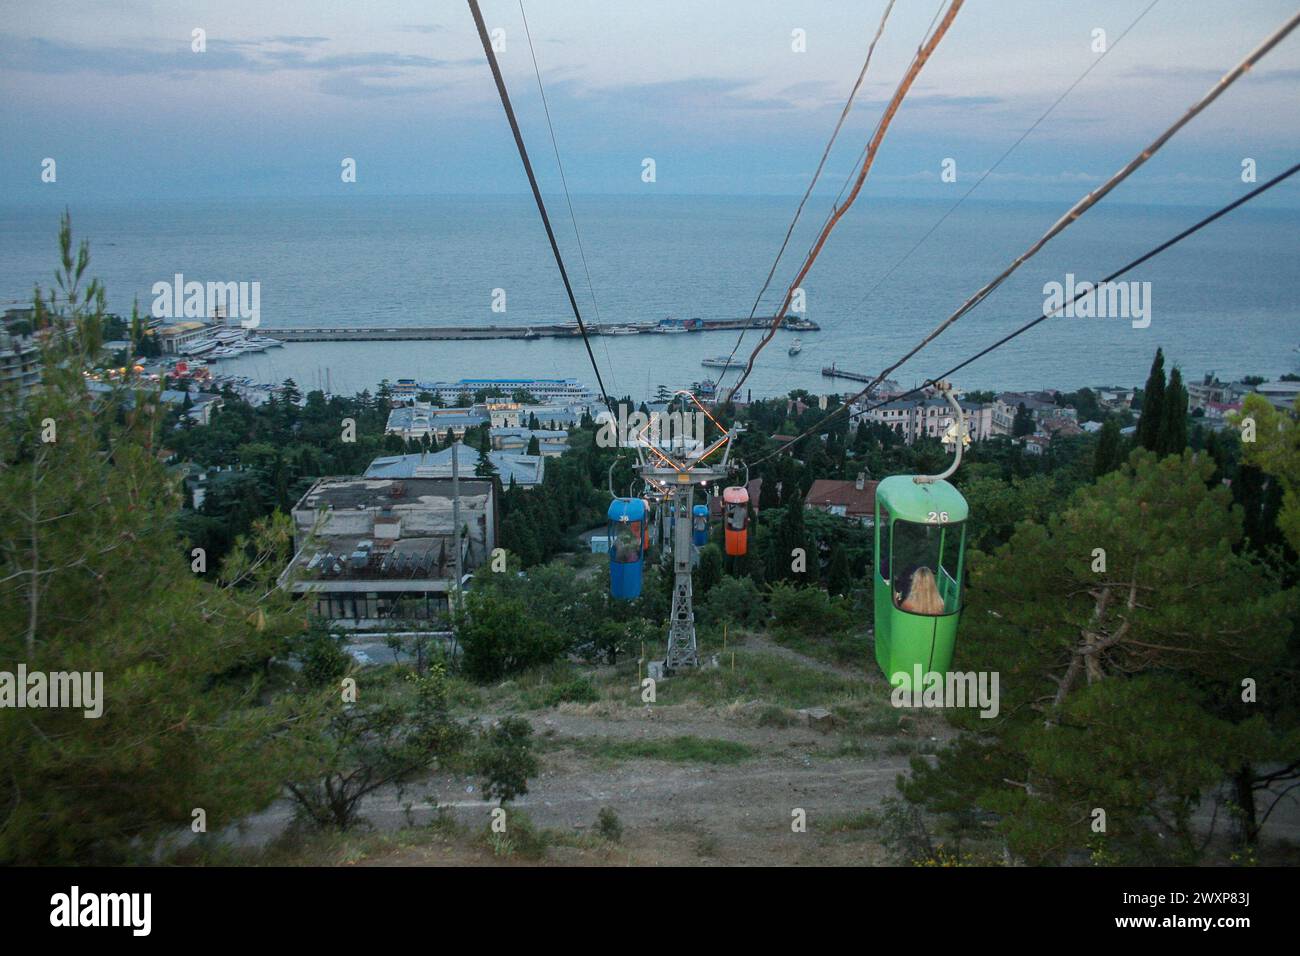 Petite télécabine touristique pour deux personnes dans le centre de yalta, Ukraine ou Russie. Télécabine touristique menant à la partie supérieure de la ville de Yalta et à un loo Banque D'Images